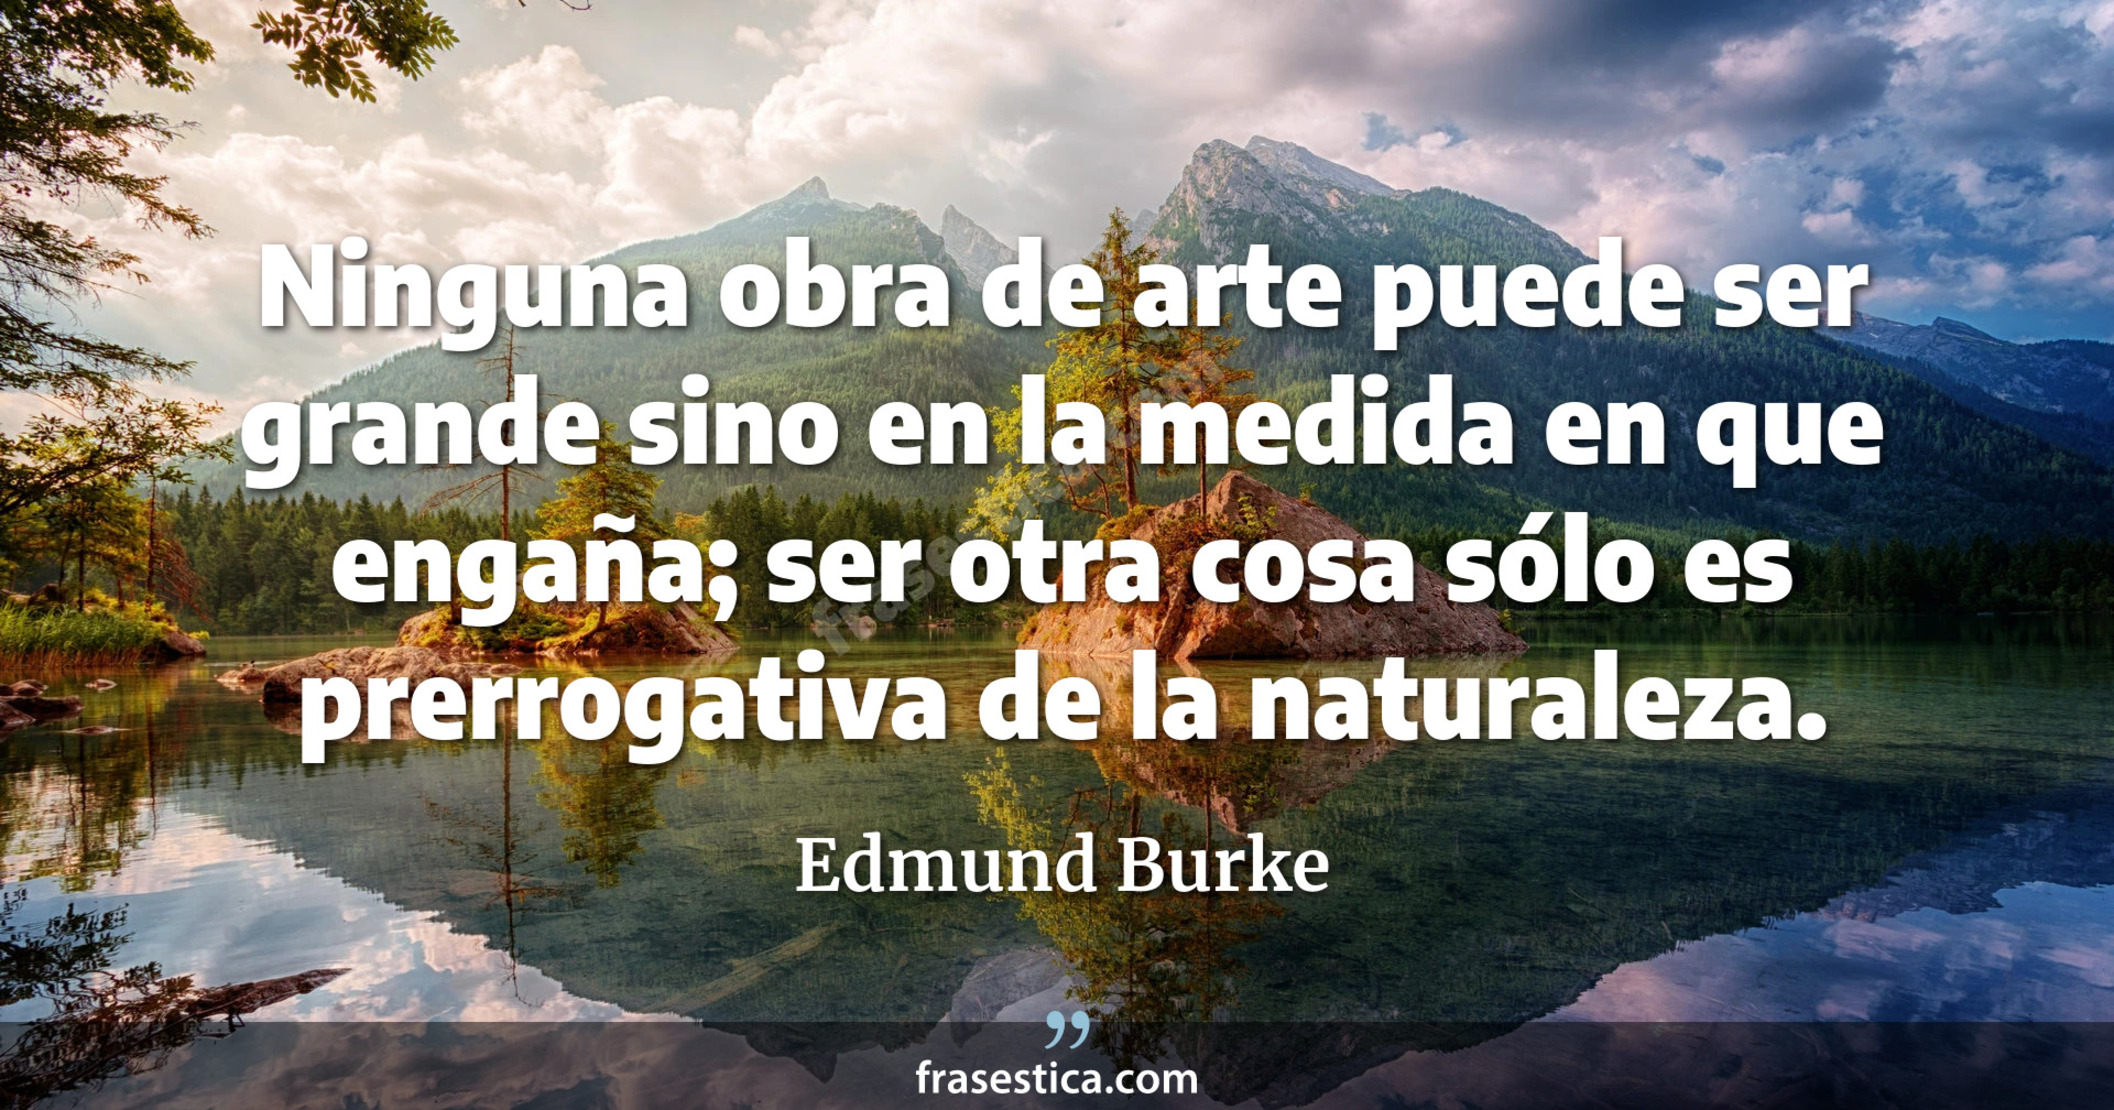 Ninguna obra de arte puede ser grande sino en la medida en que engaña; ser otra cosa sólo es prerrogativa de la naturaleza. - Edmund Burke